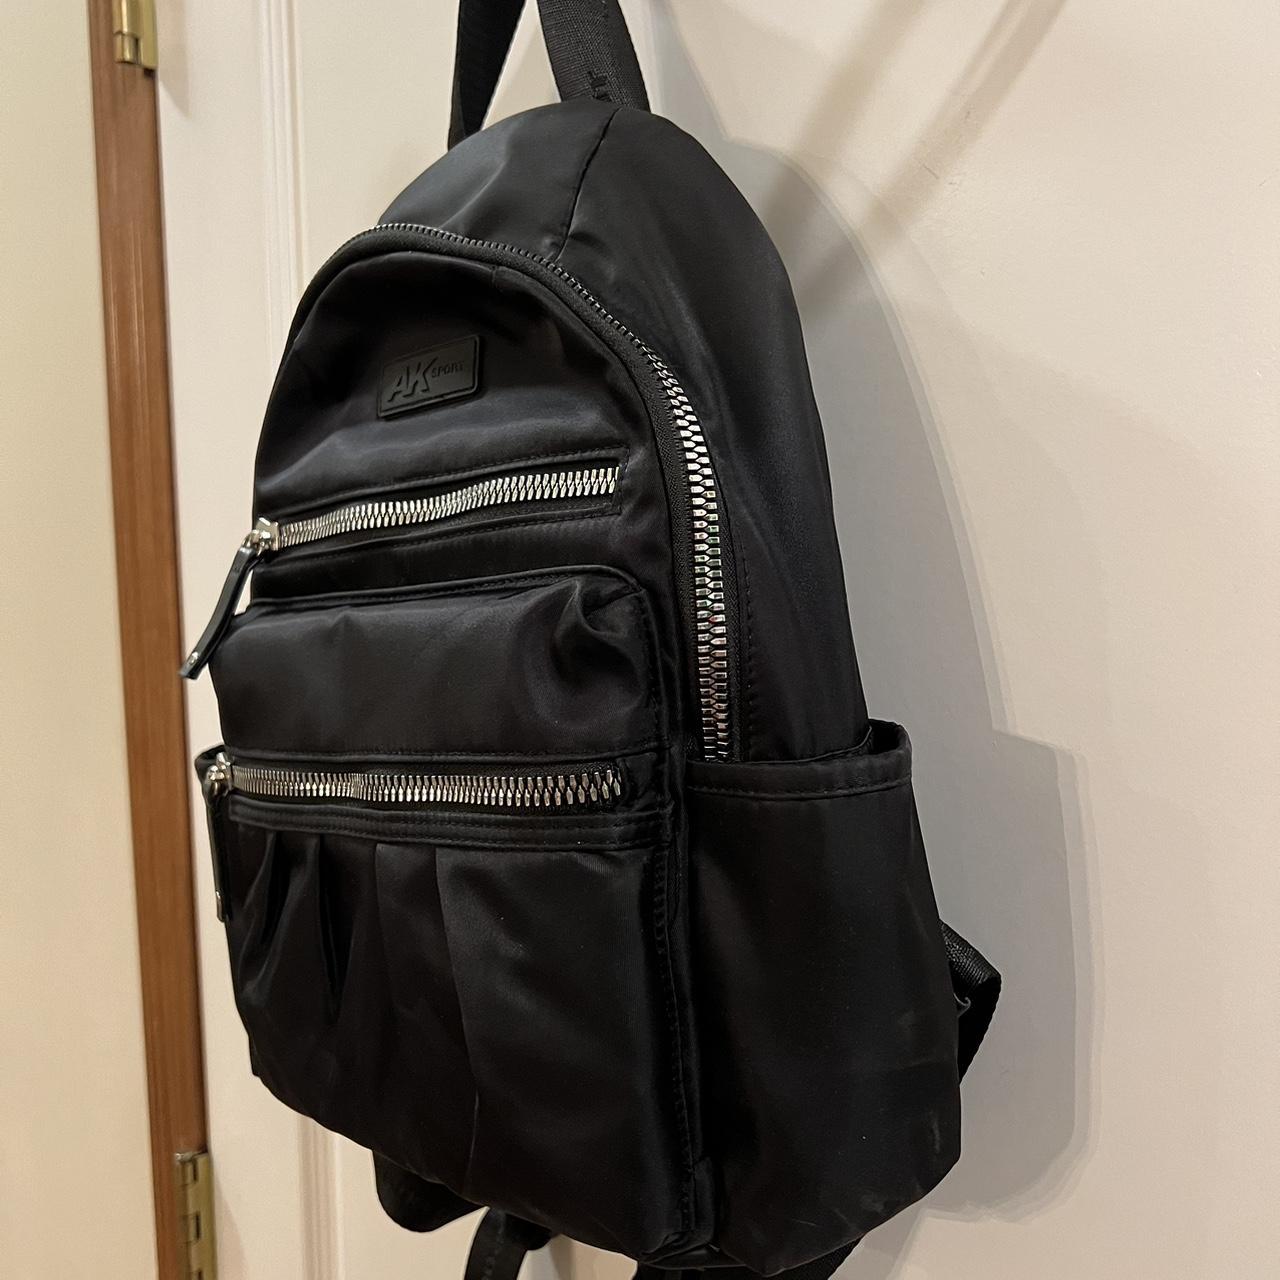 Buy Anne Klein Backpacks for sale online | lazada.com.ph